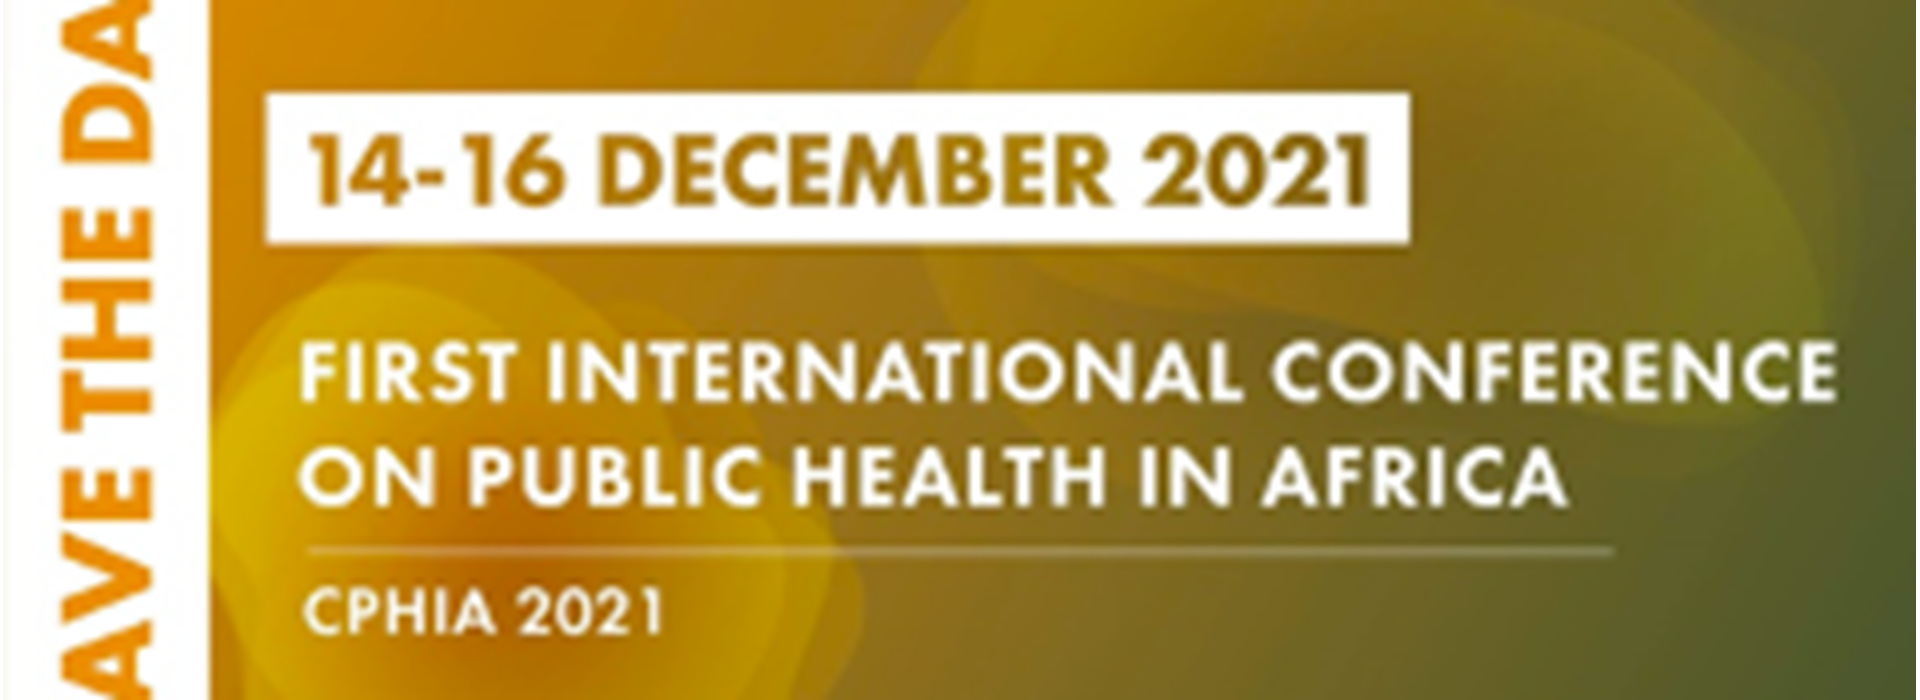 Première Conférence Internationale sur la Santé Publique en Afrique (CPHIA)